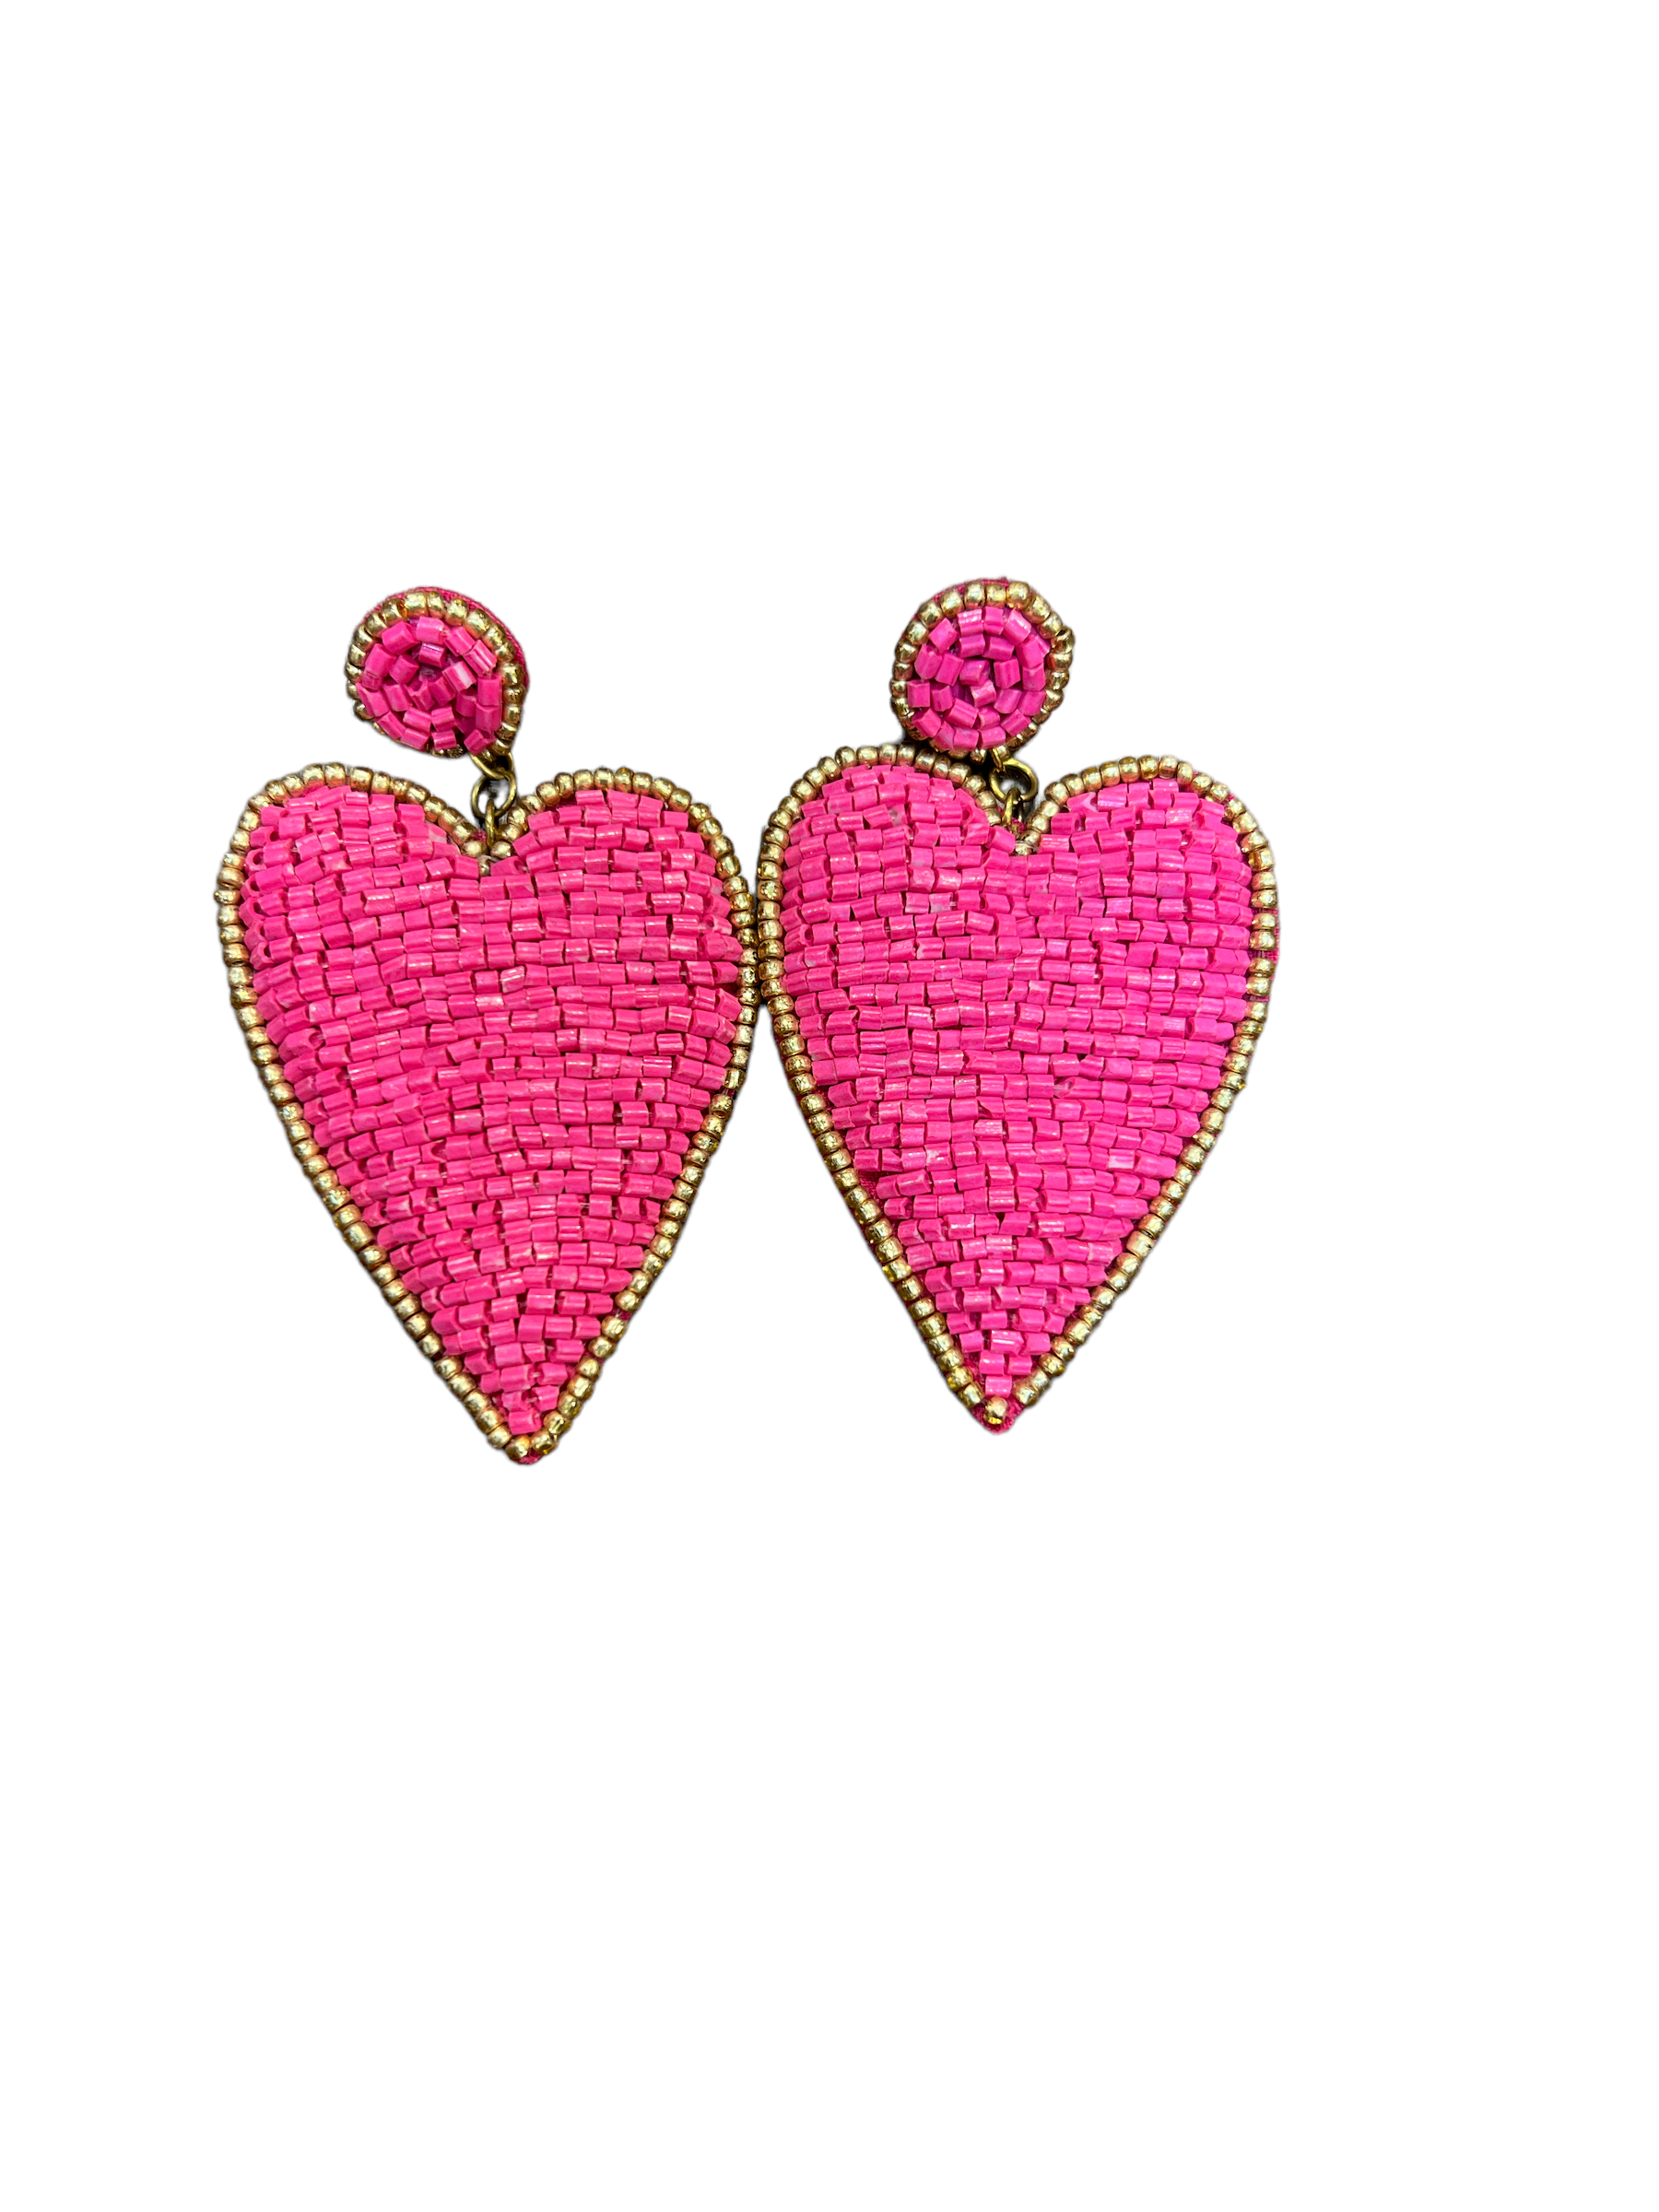 Heart Bead Earrings-999 Distress-Simply Stylish Boutique-Simply Stylish Boutique | Women’s & Kid’s Fashion | Paducah, KY